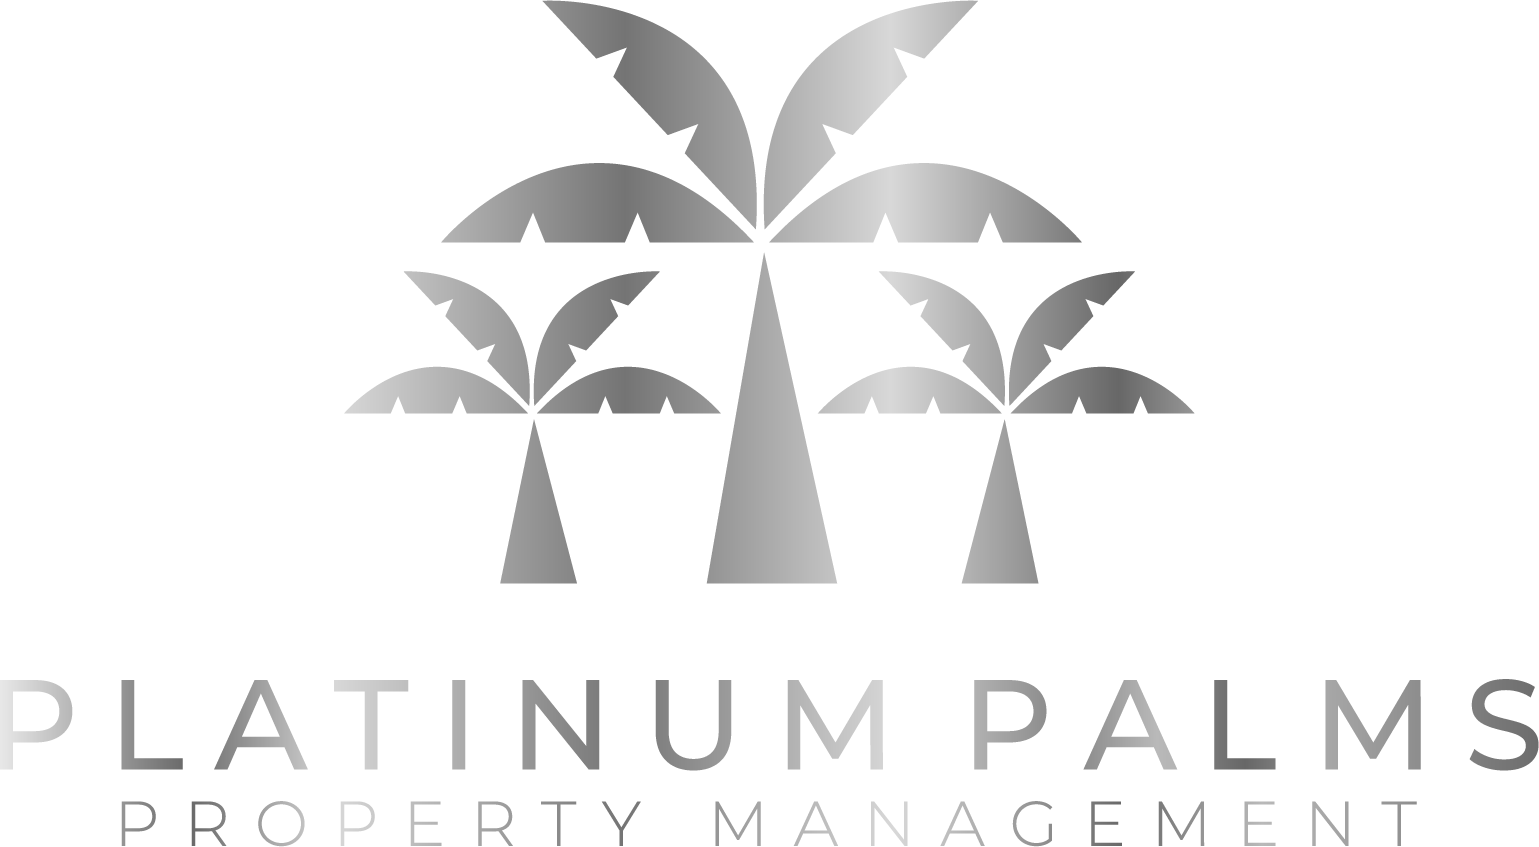 Platnium Palms Property Management